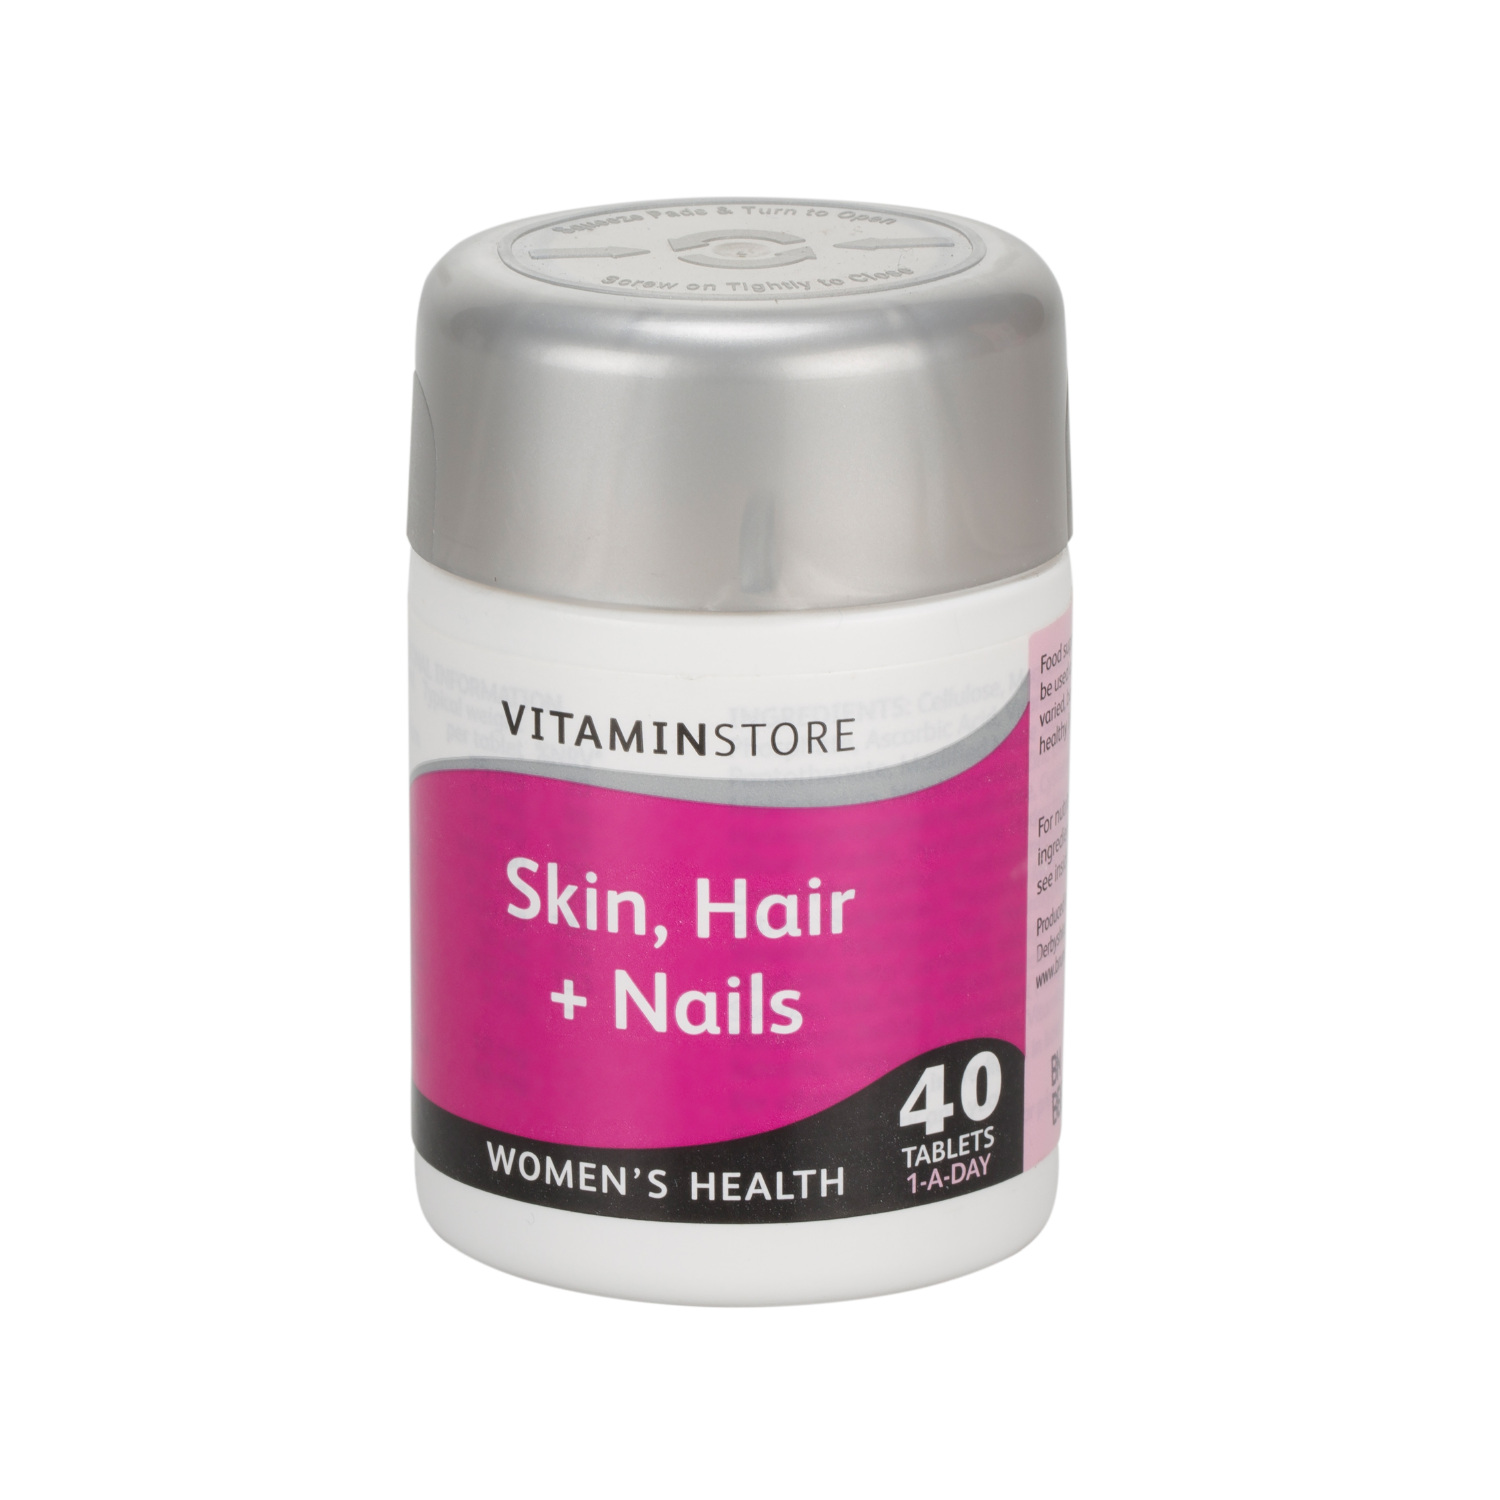 Vitamin Store Skin Hair & Nails Tablets Image